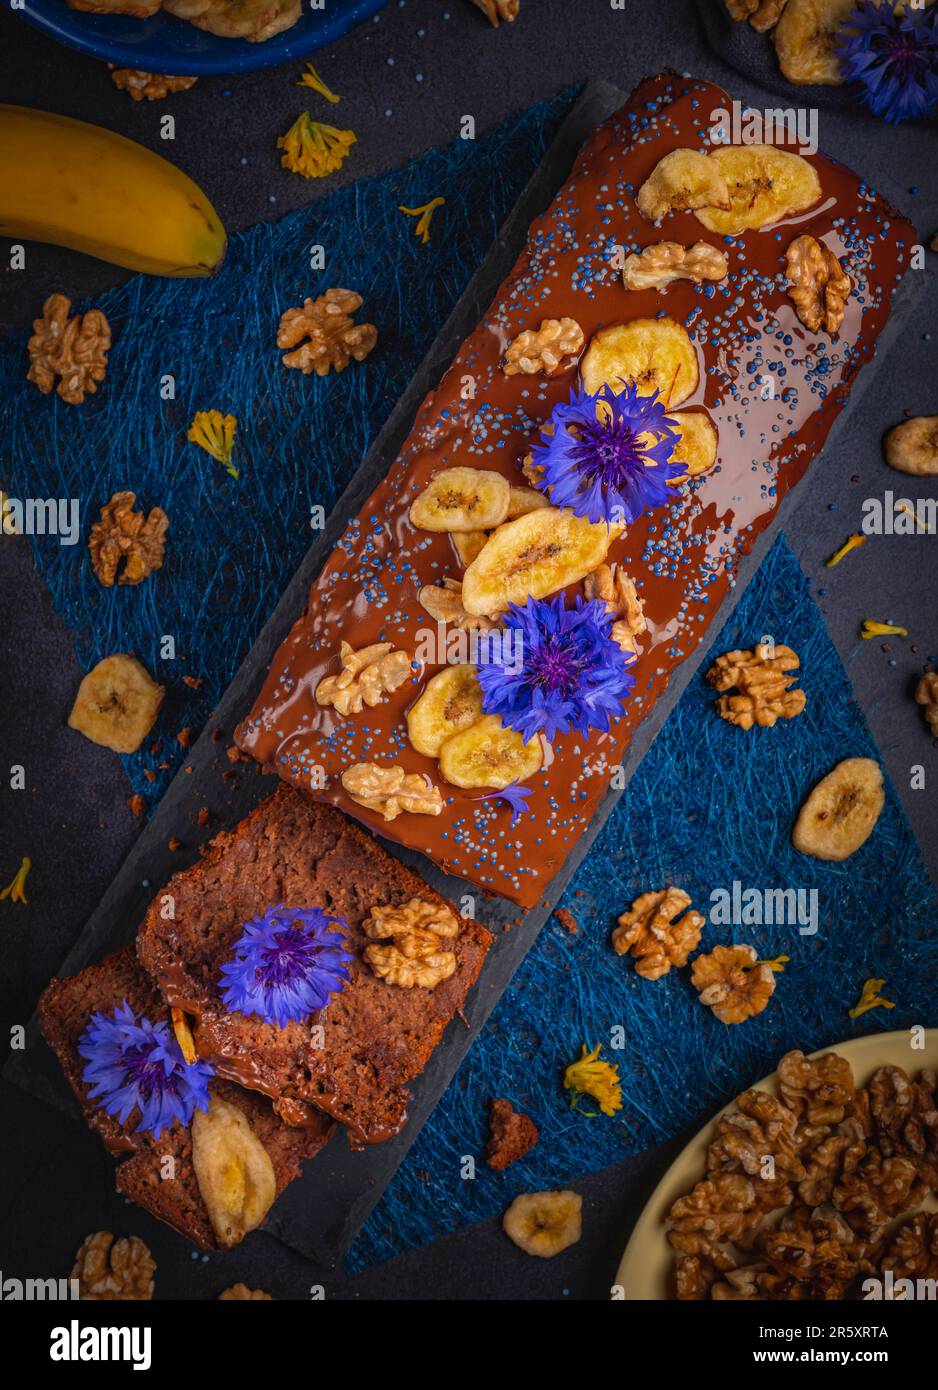 Pane di banana tagliato con cioccolato, patatine di banana e noci, decorato con fiori di mais, vegan, fotografia alimentare Foto Stock